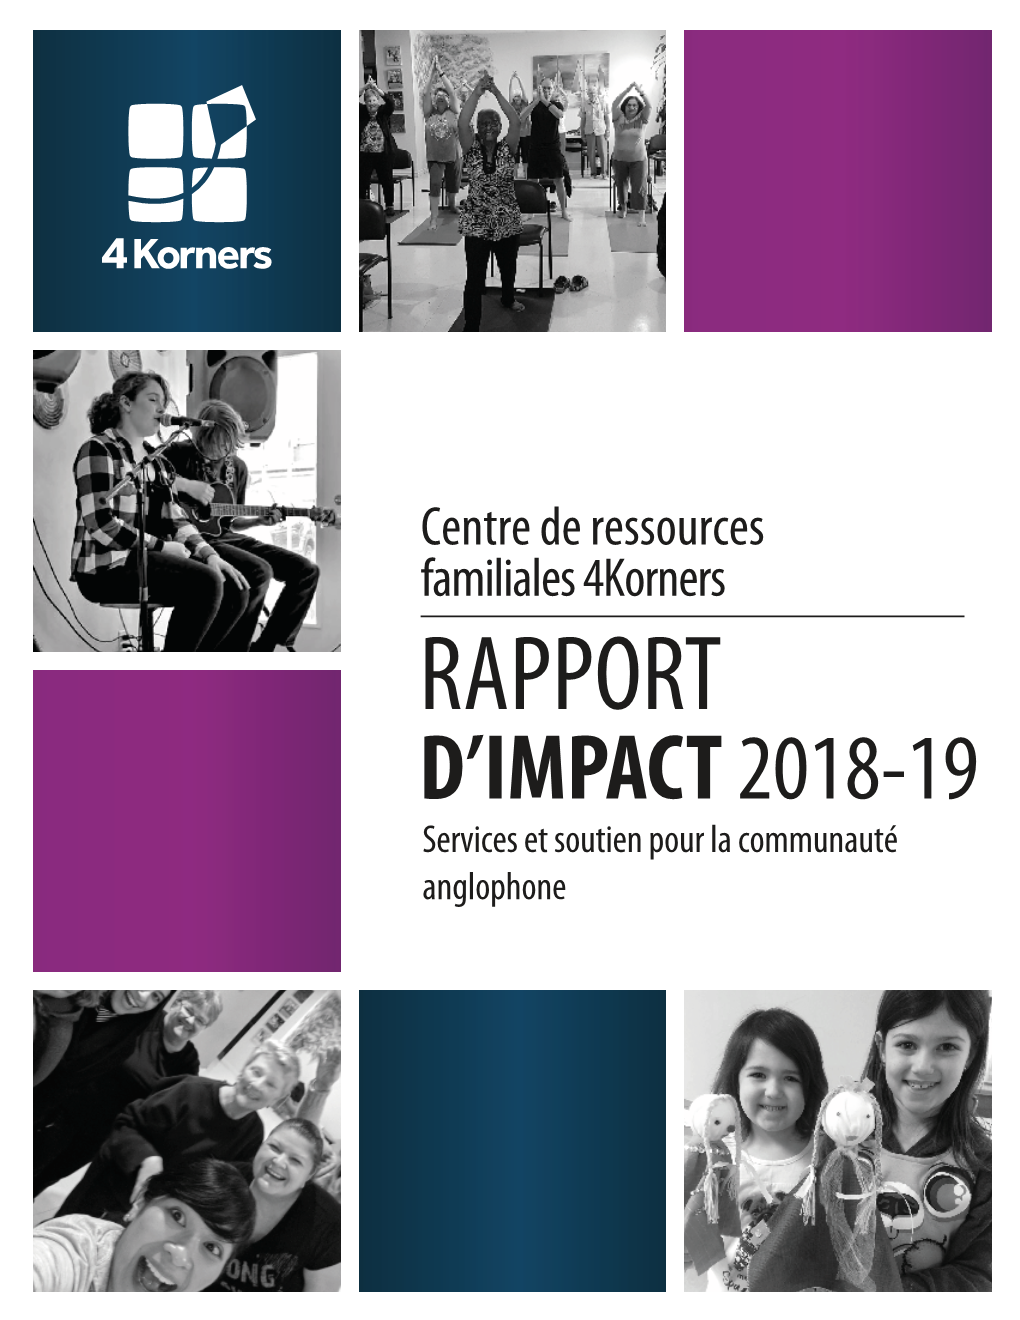 2018-2019 Rapport D'impact